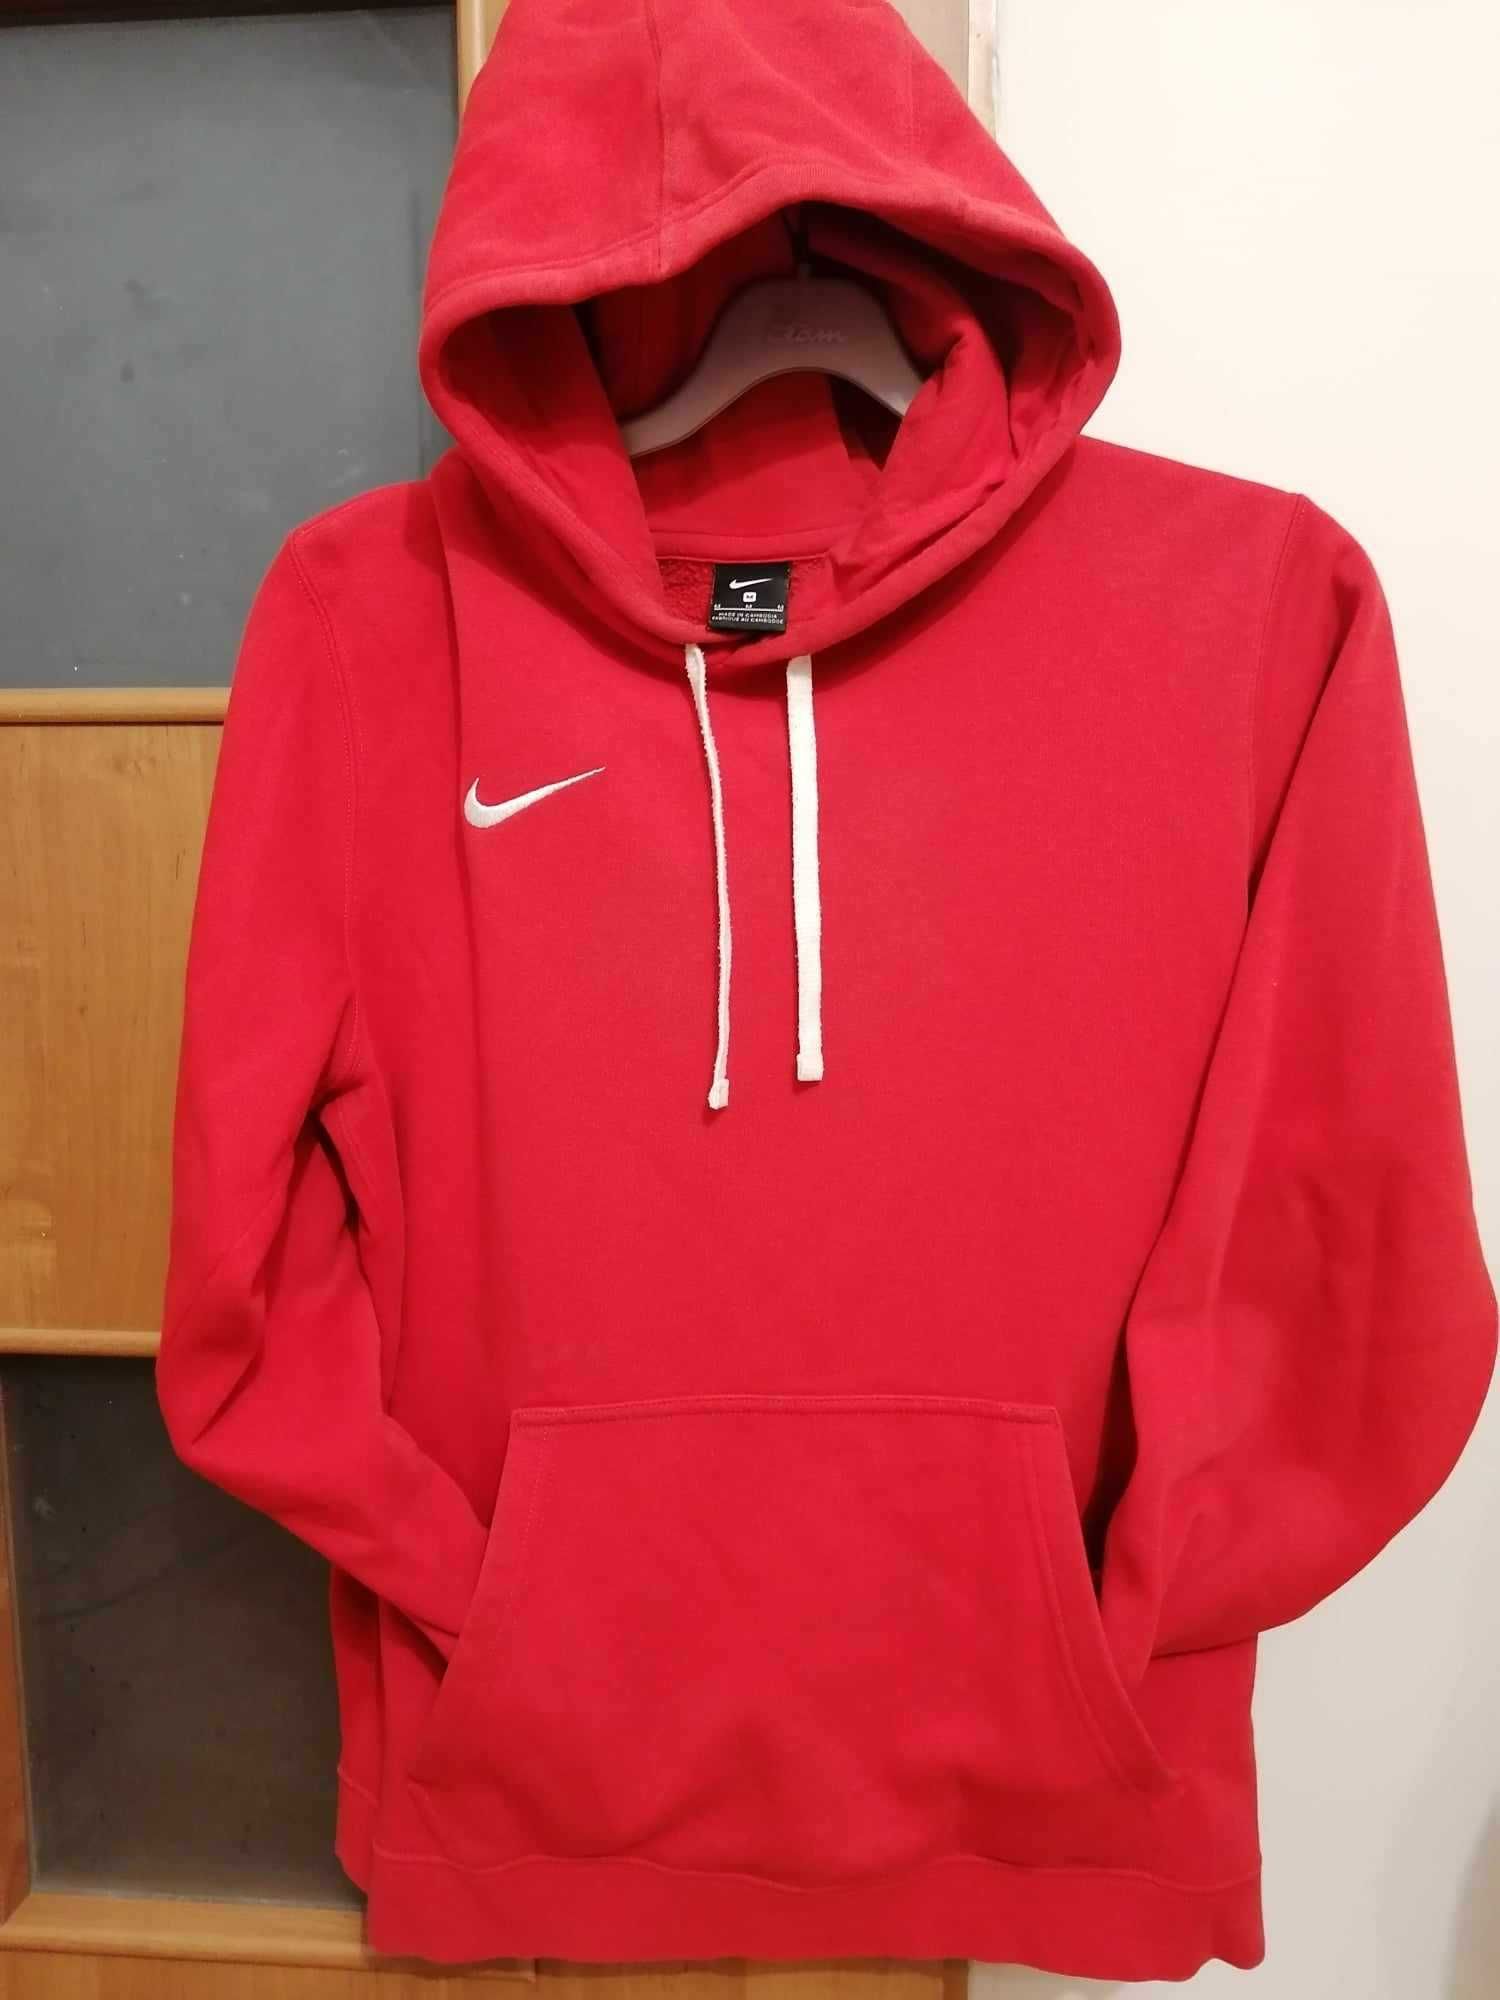 sportowa czerwona bluza z kapturem firmy nike rozmiar M, kieszenie